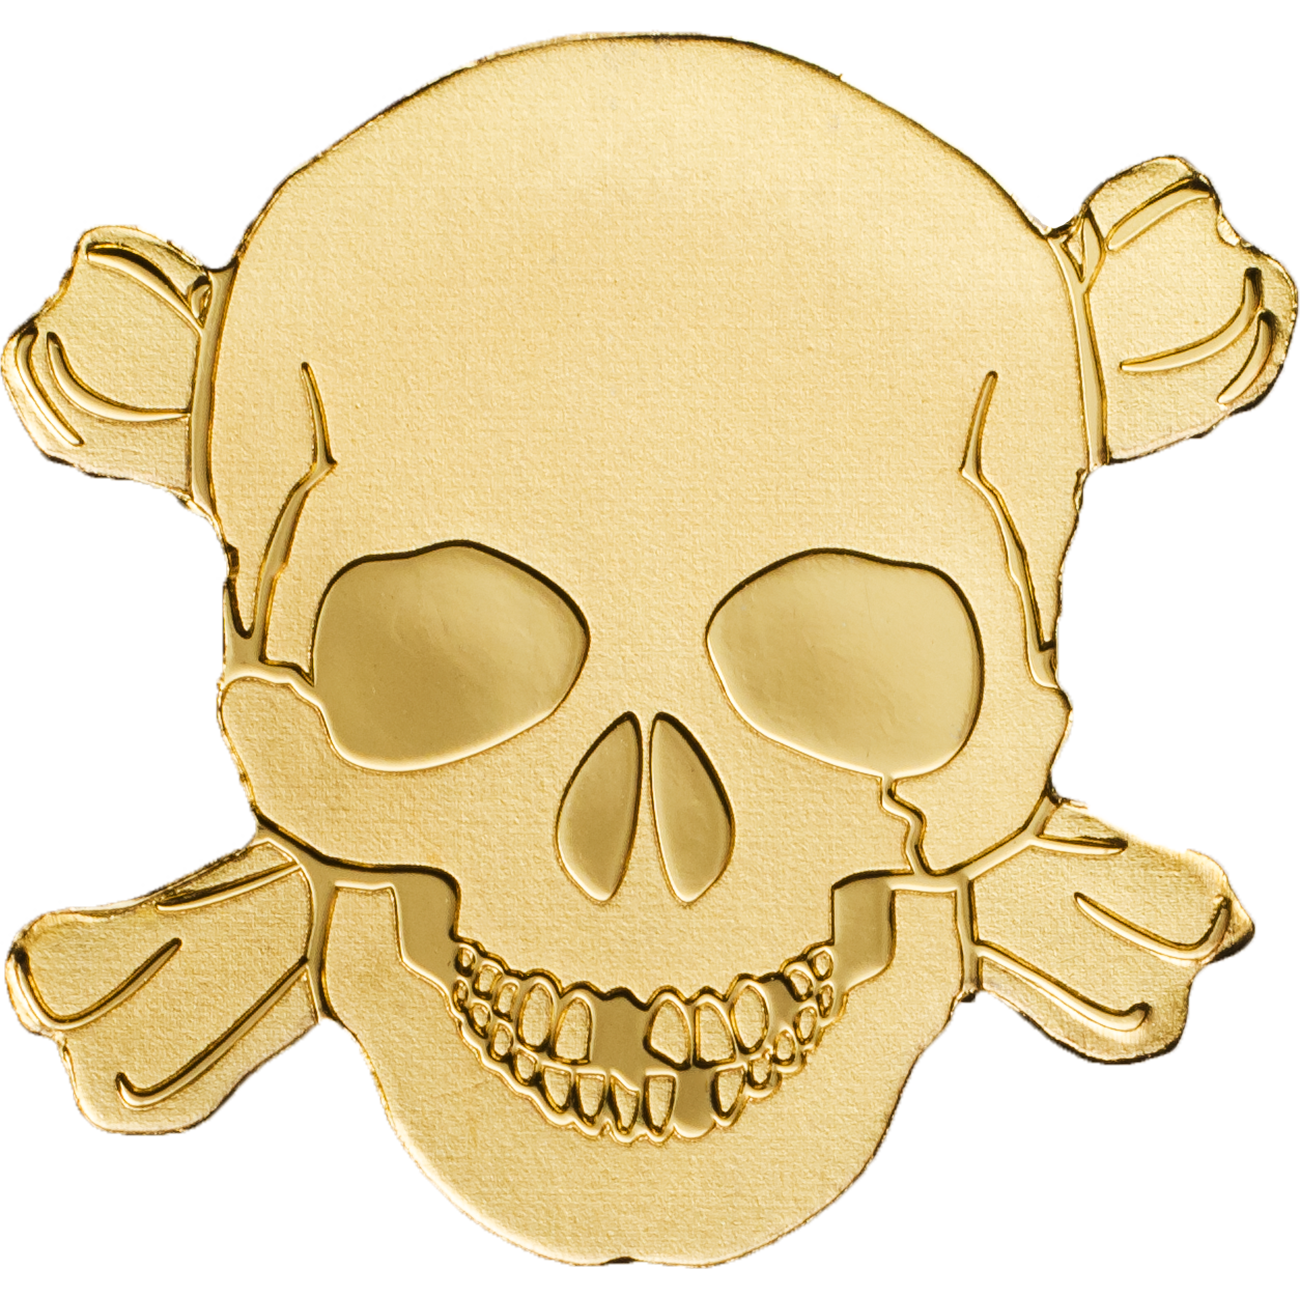 Pirate crâne PNG image Transparente